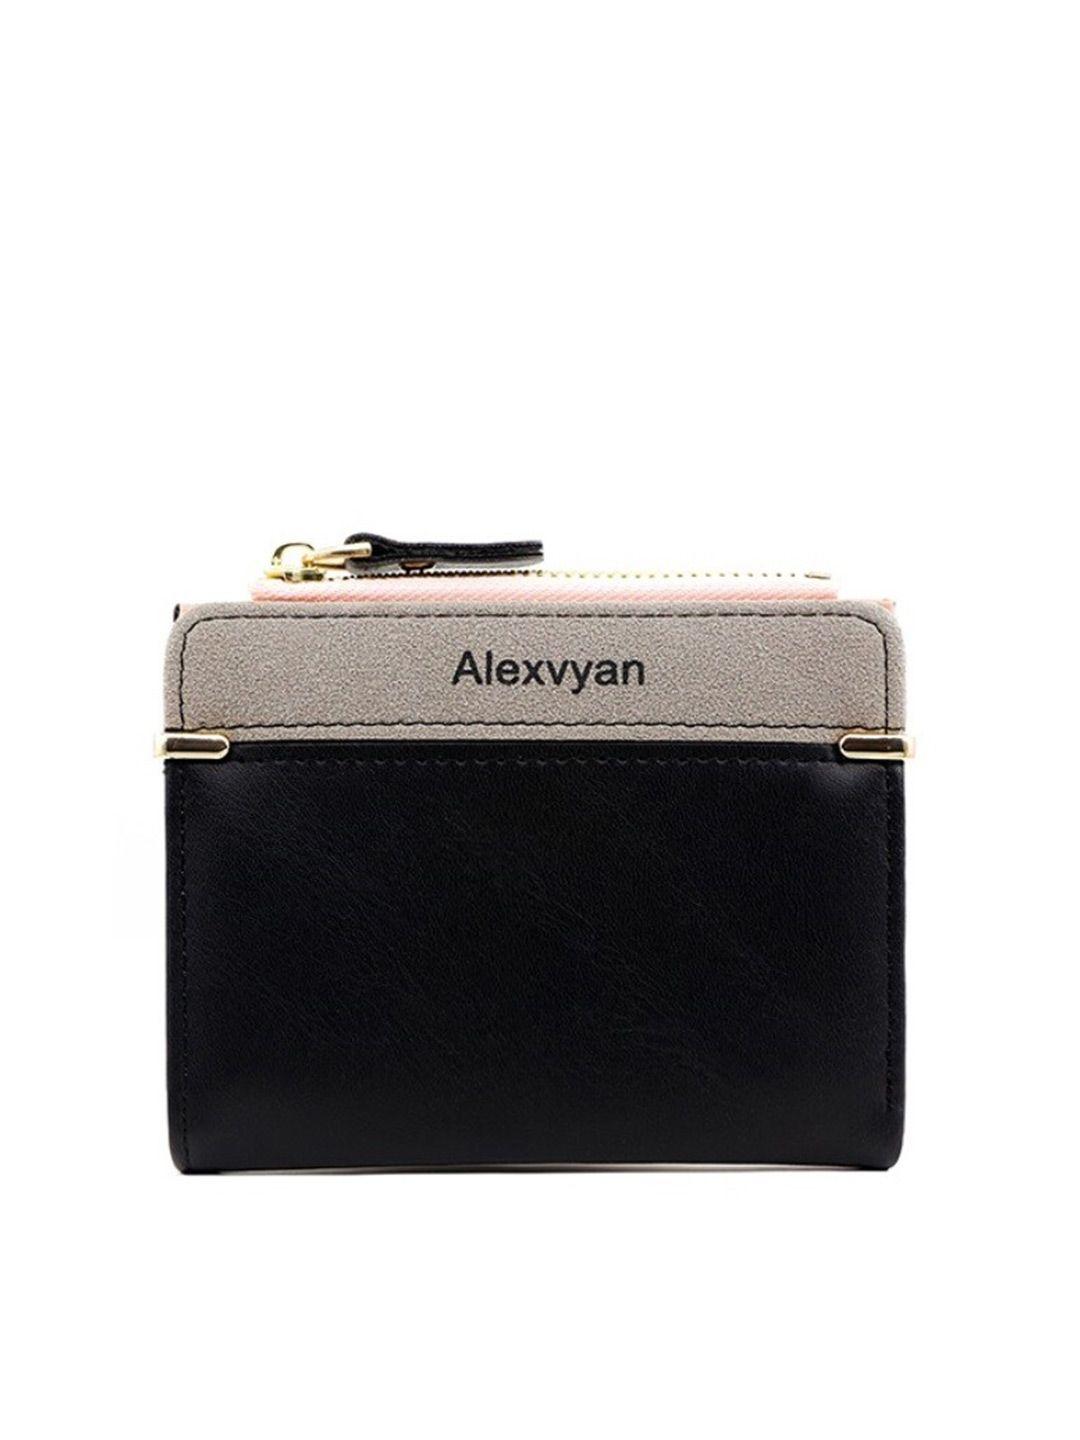 alexvyan women two fold wallet